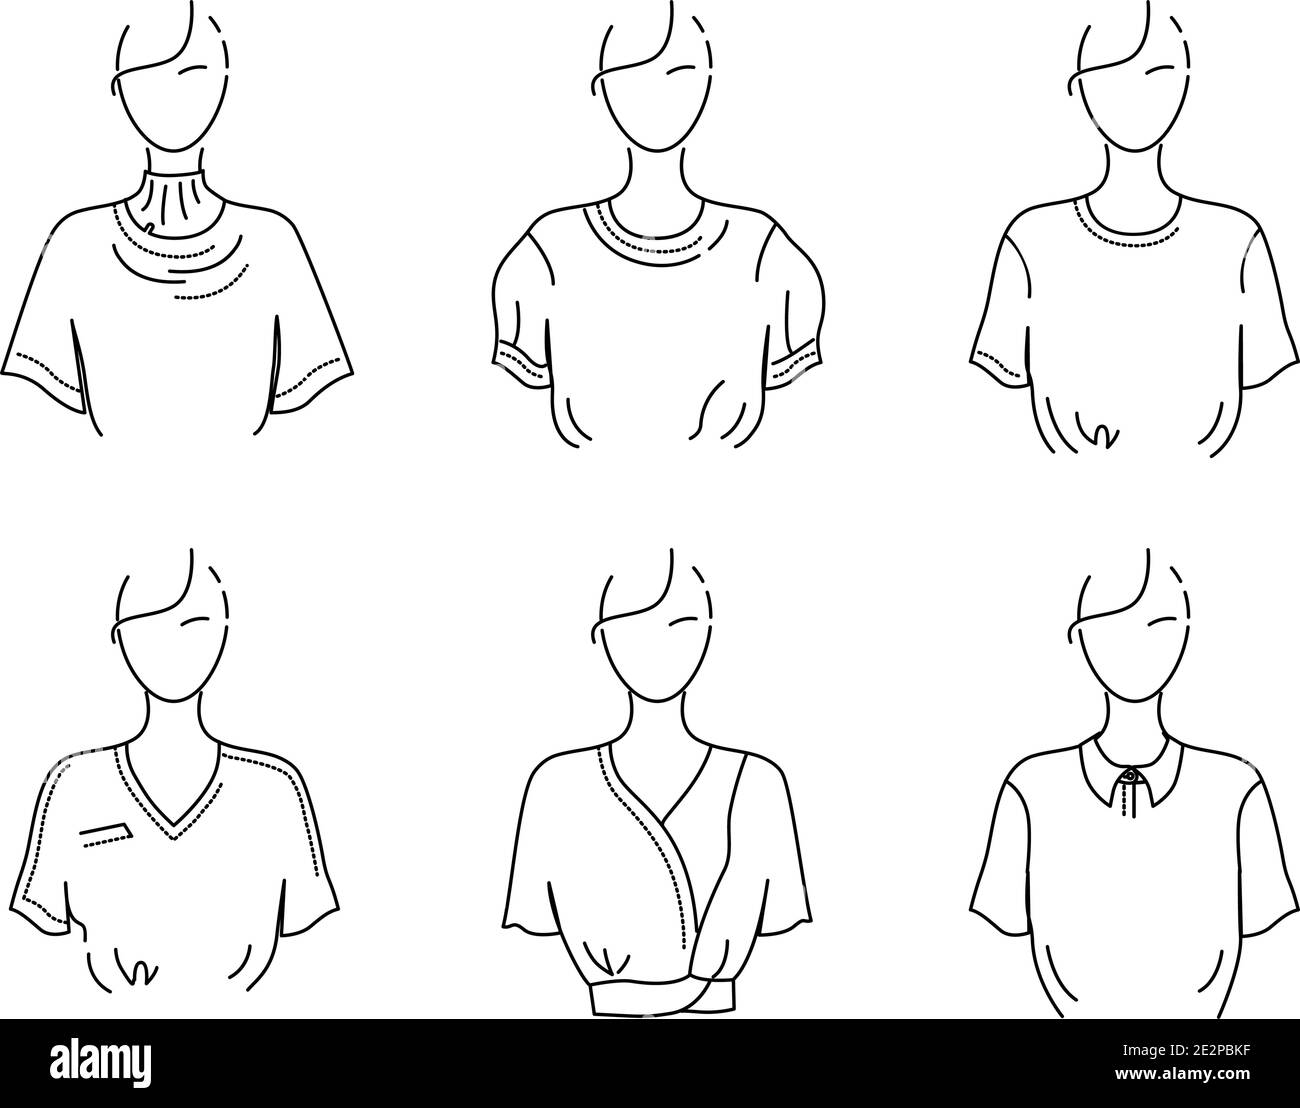 T-shirt bianca donna, blusa, top, set di illustrazioni vettoriali schematiche. Schizzo di abiti di tagli, disegni diversi. Illustrazione Vettoriale